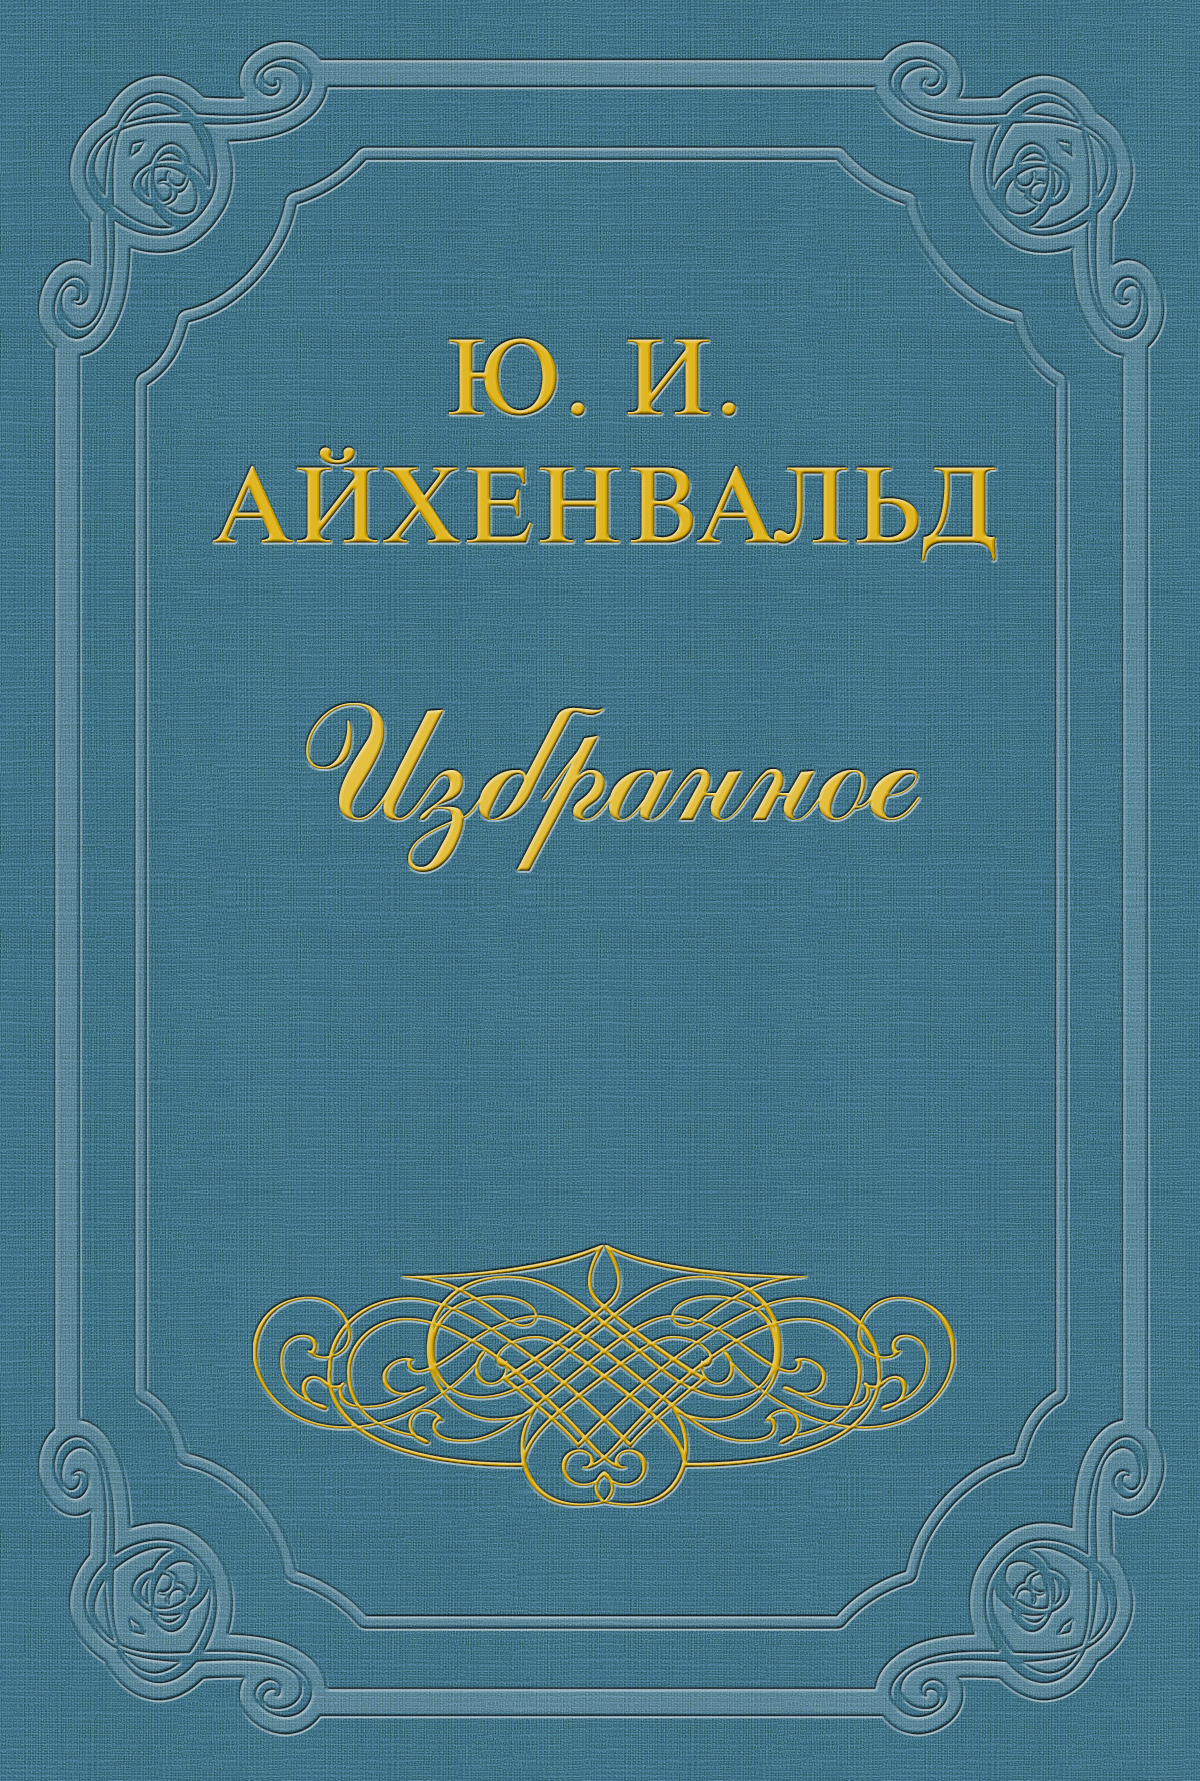 Книга Помяловский из серии , созданная Юлий Айхенвальд, может относится к жанру Критика. Стоимость книги Помяловский  с идентификатором 2610465 составляет 5.99 руб.